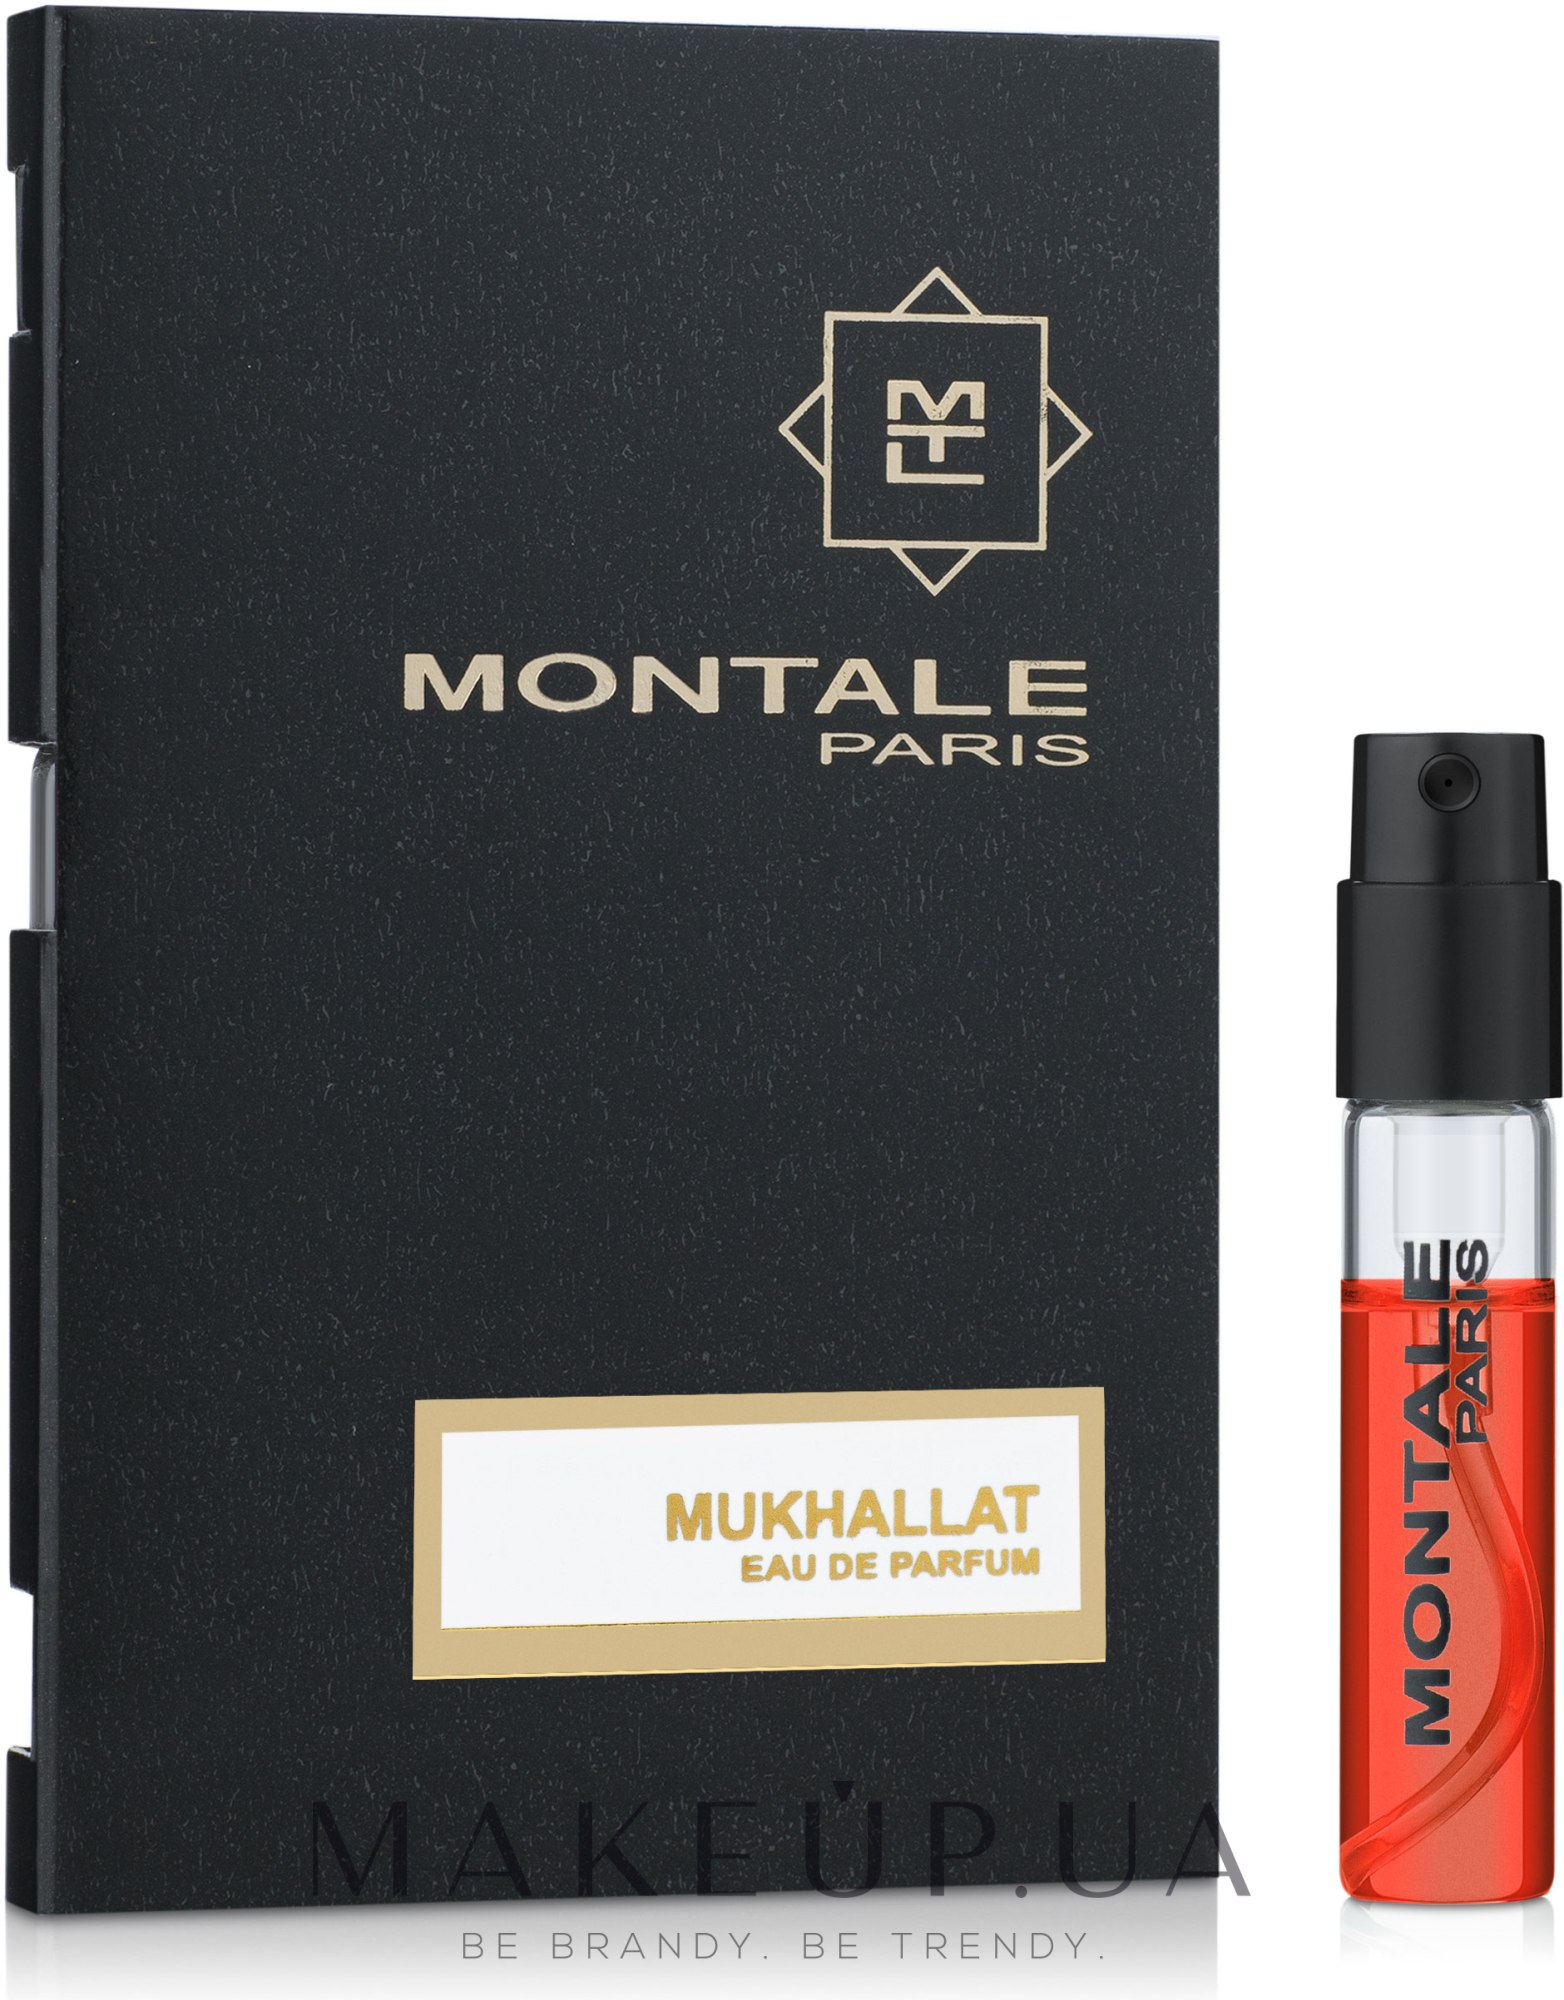 Montale Mukhallat